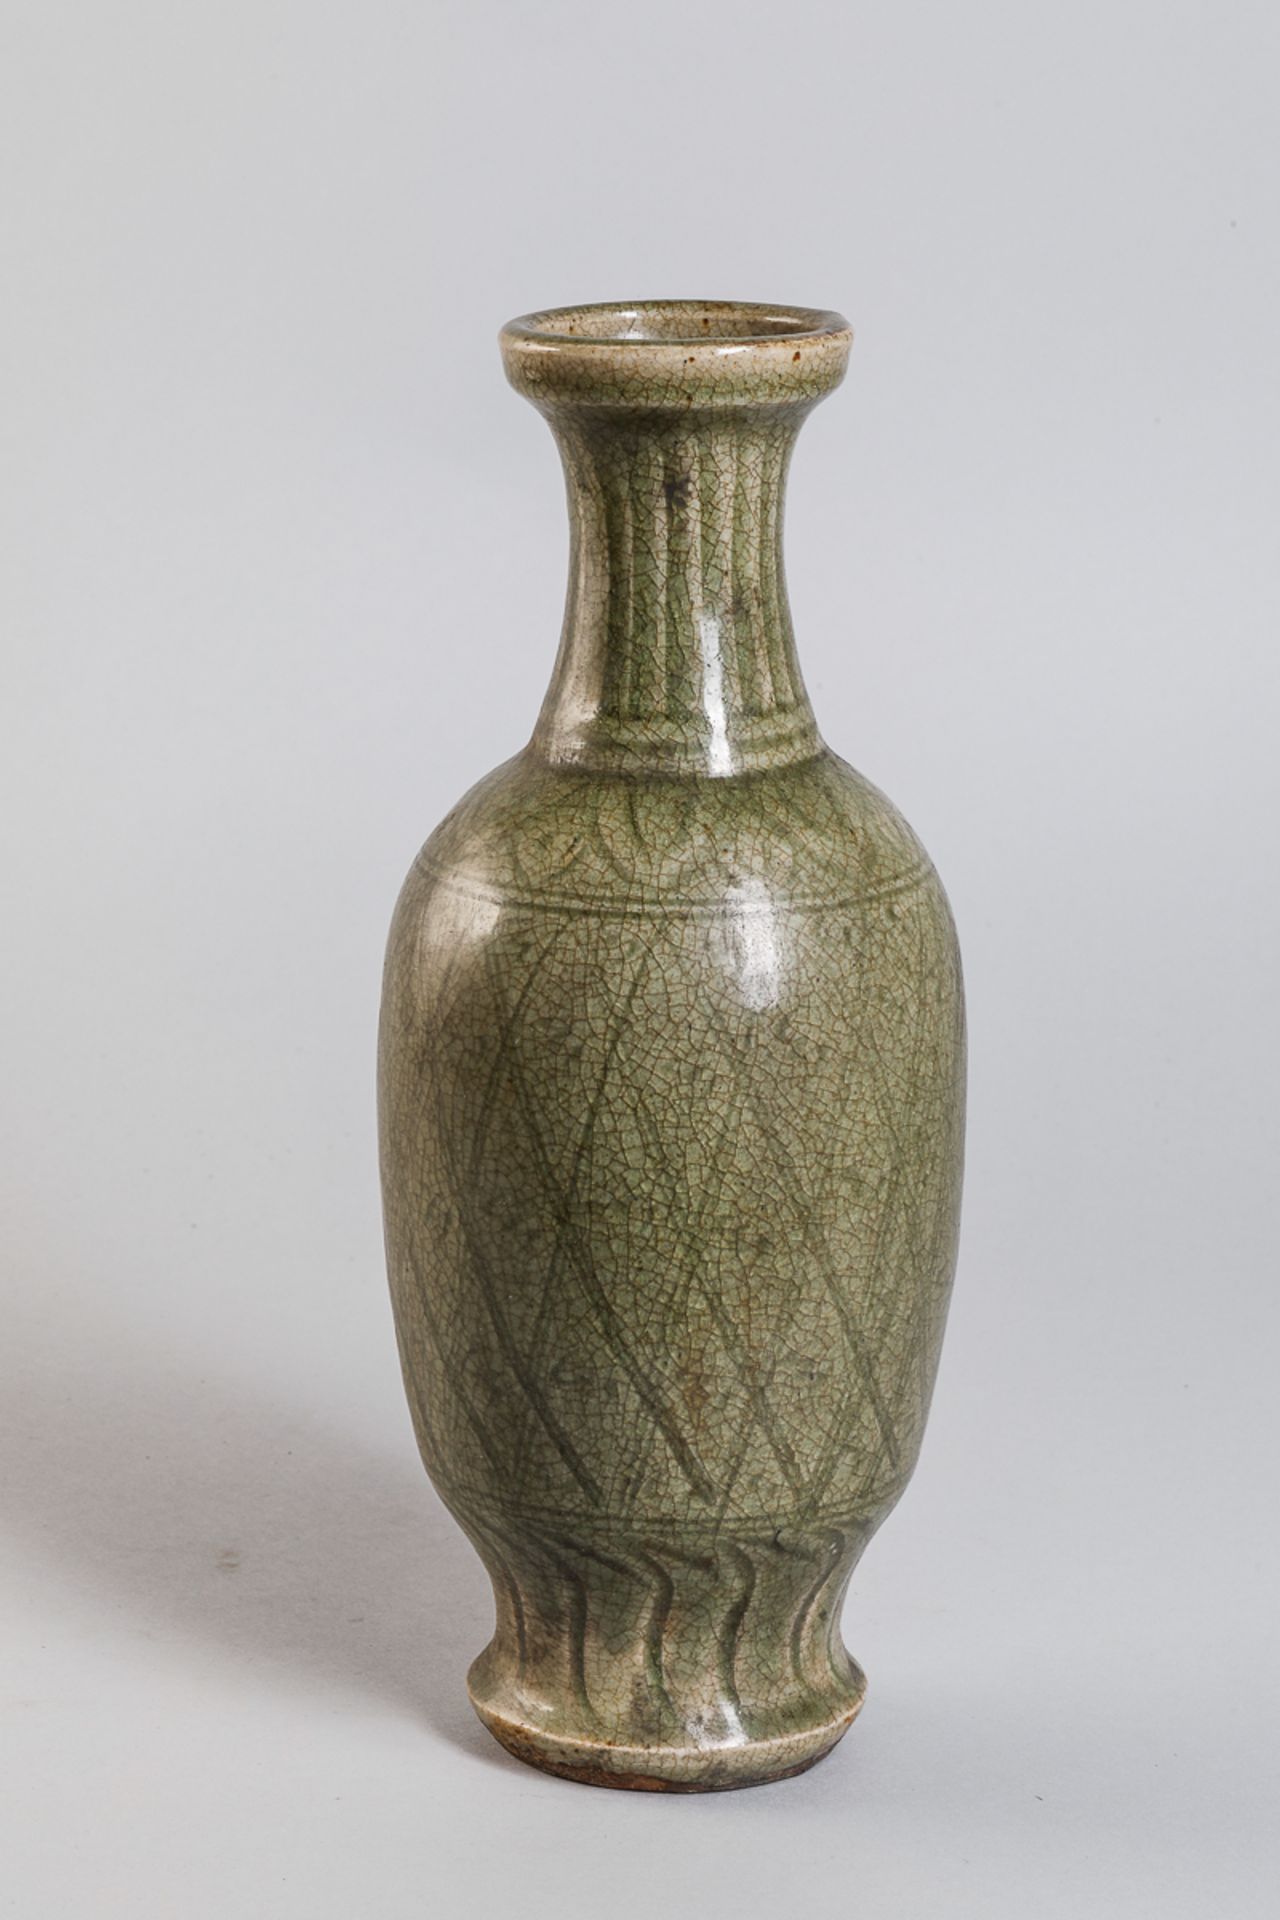 Vase balustre en porcelaine du Longquan en forme de flacon sur piédouche, panse ovoïde et haut col